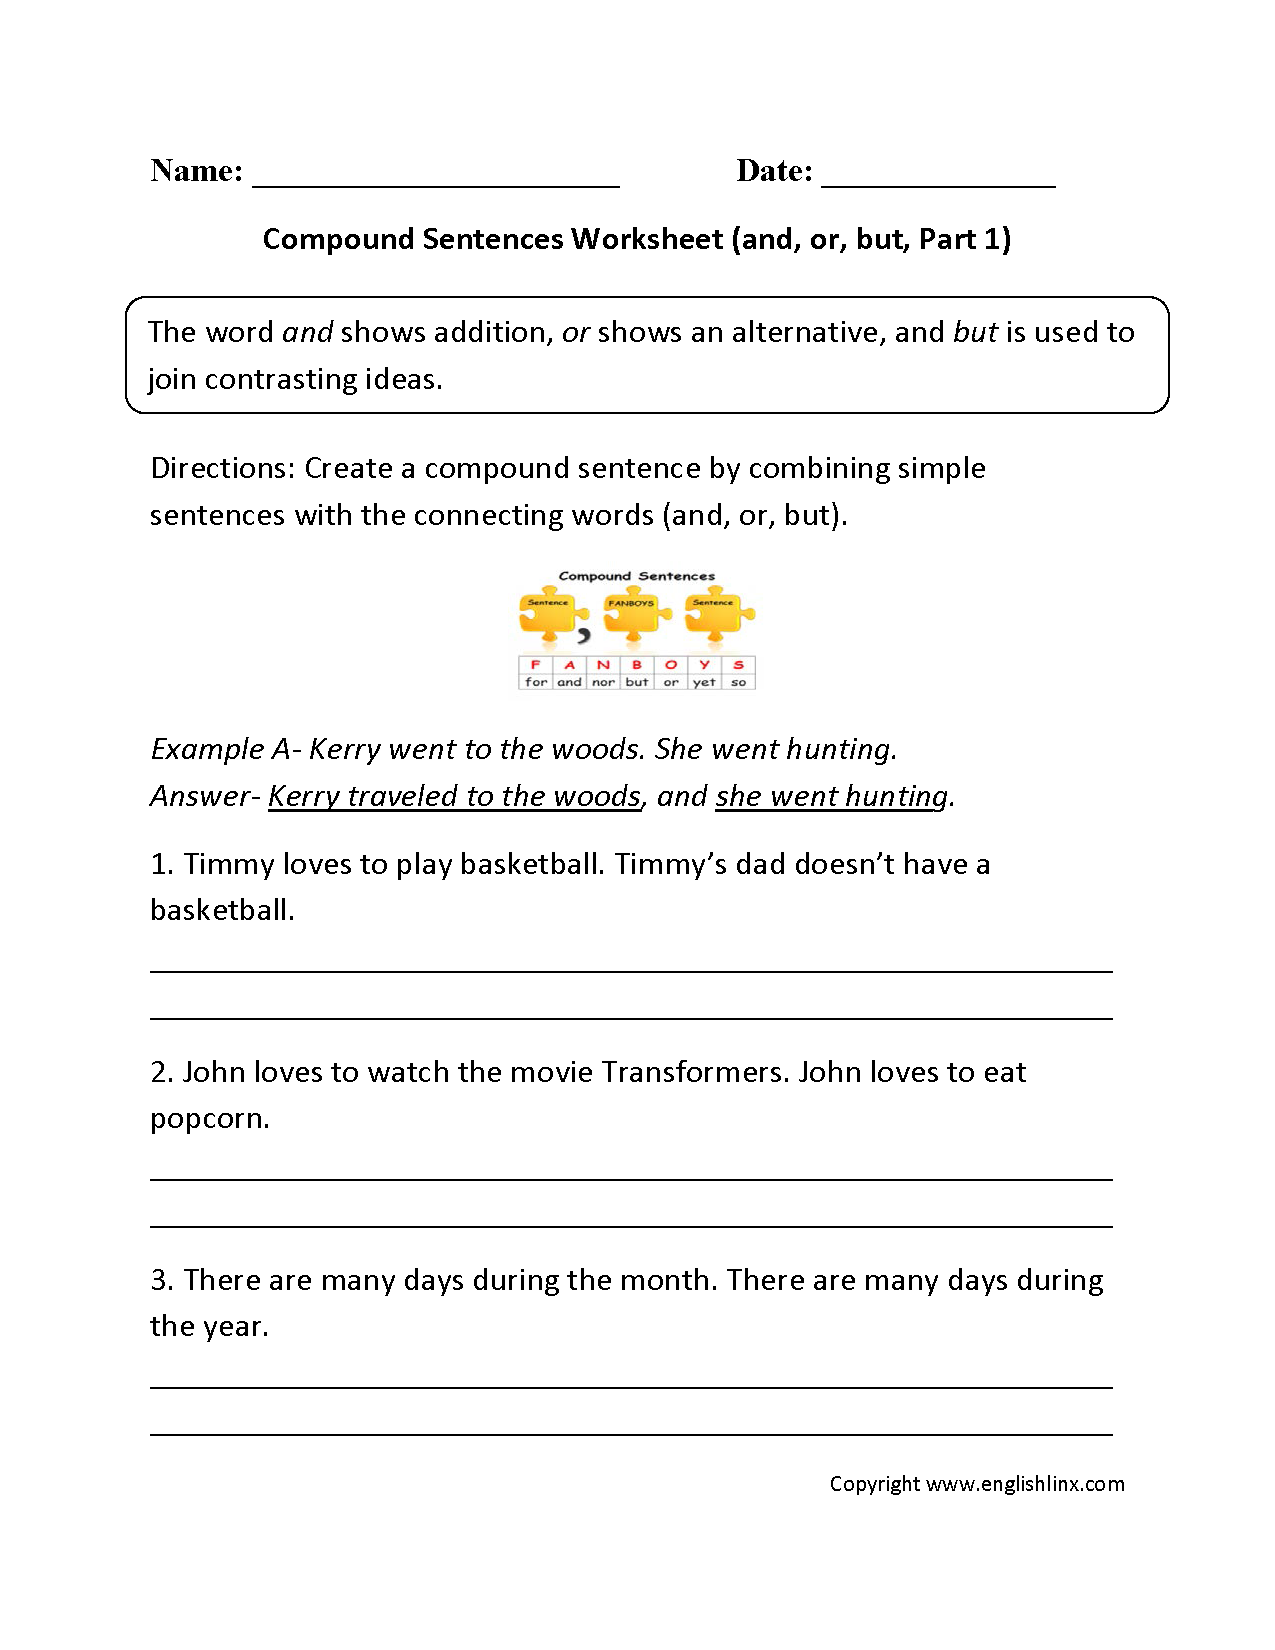 Compound Sentences Worksheet Online